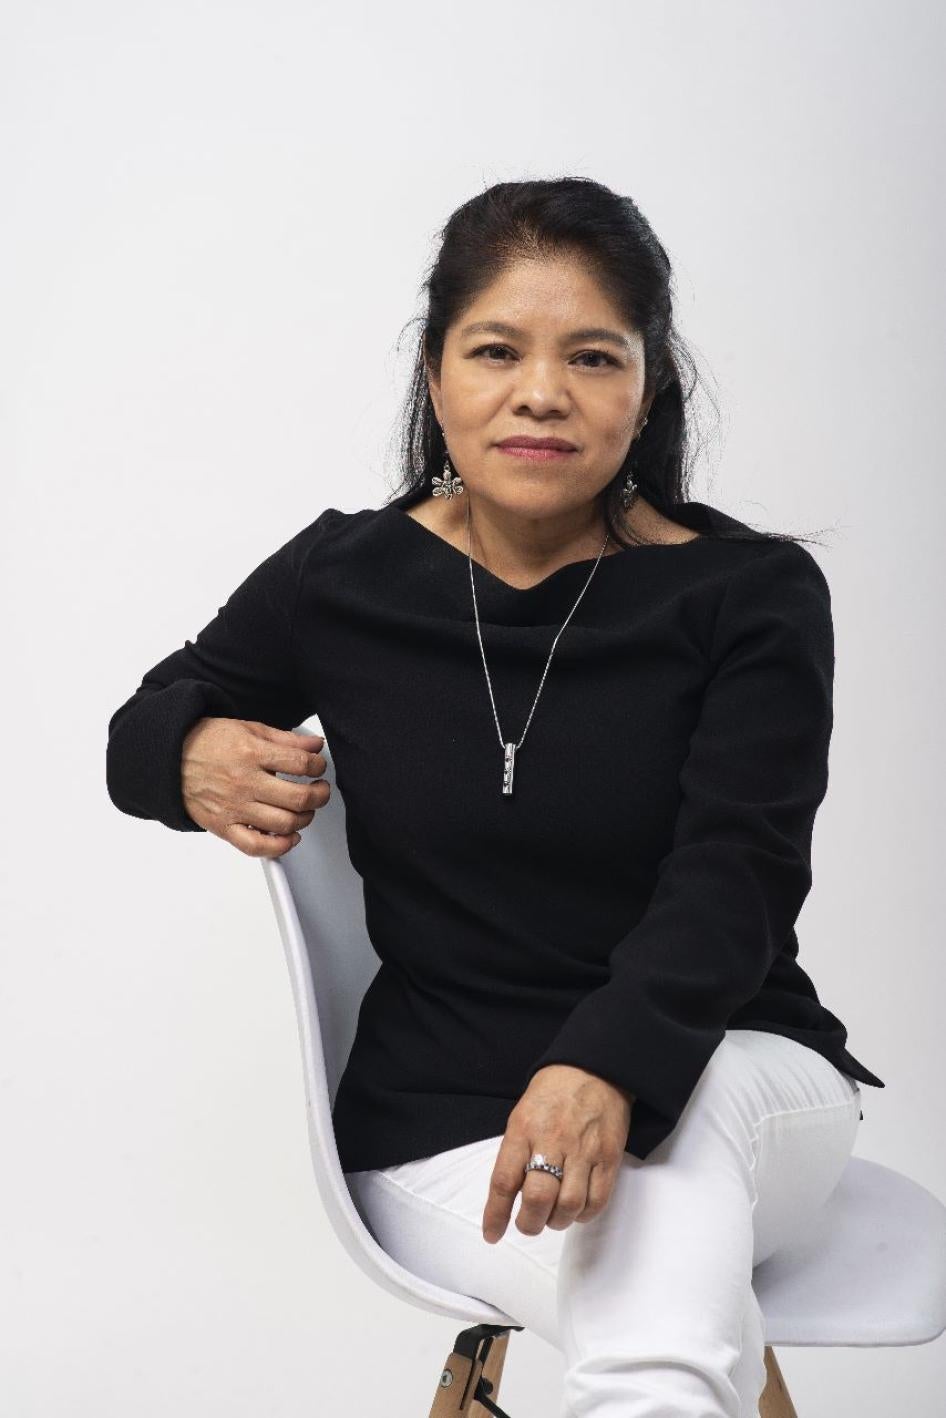 Marcelina Bautista, Centro de Apoyo y Capacitación para Empleadas del Hogar (CACEH), Mexique.